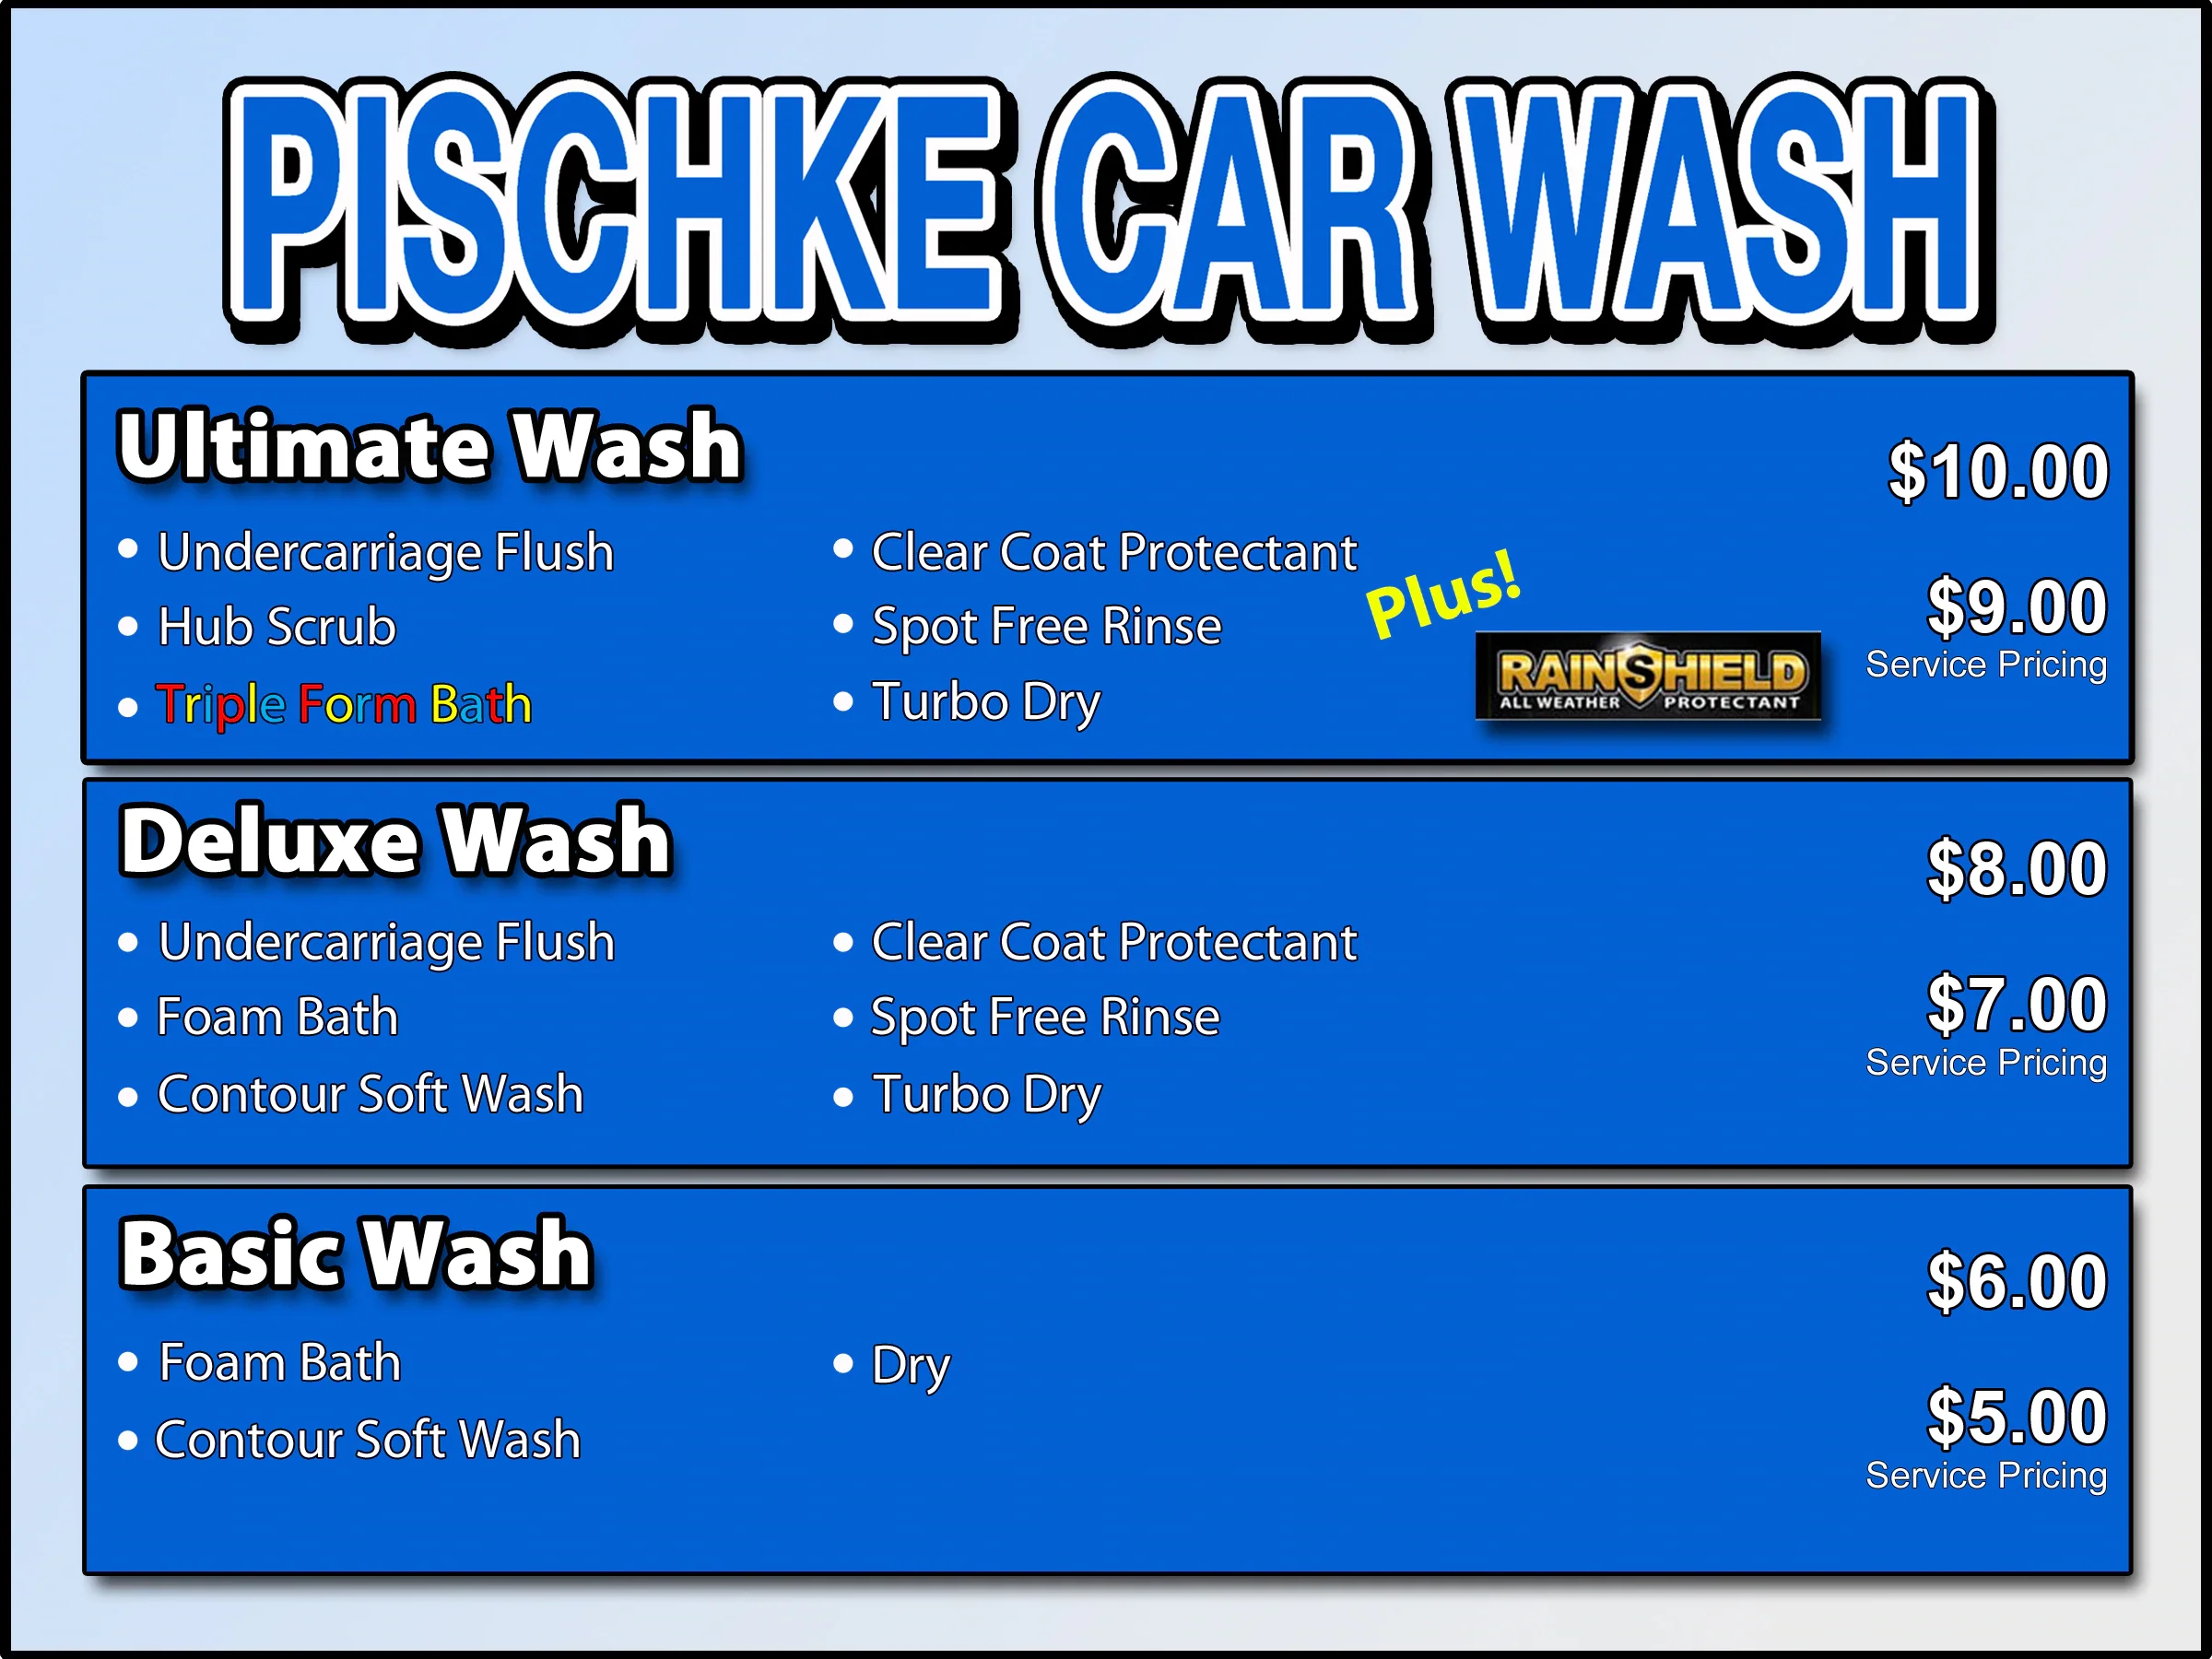 Car Wash | Pischke Motors of La Crosse, Inc. in La Crosse WI